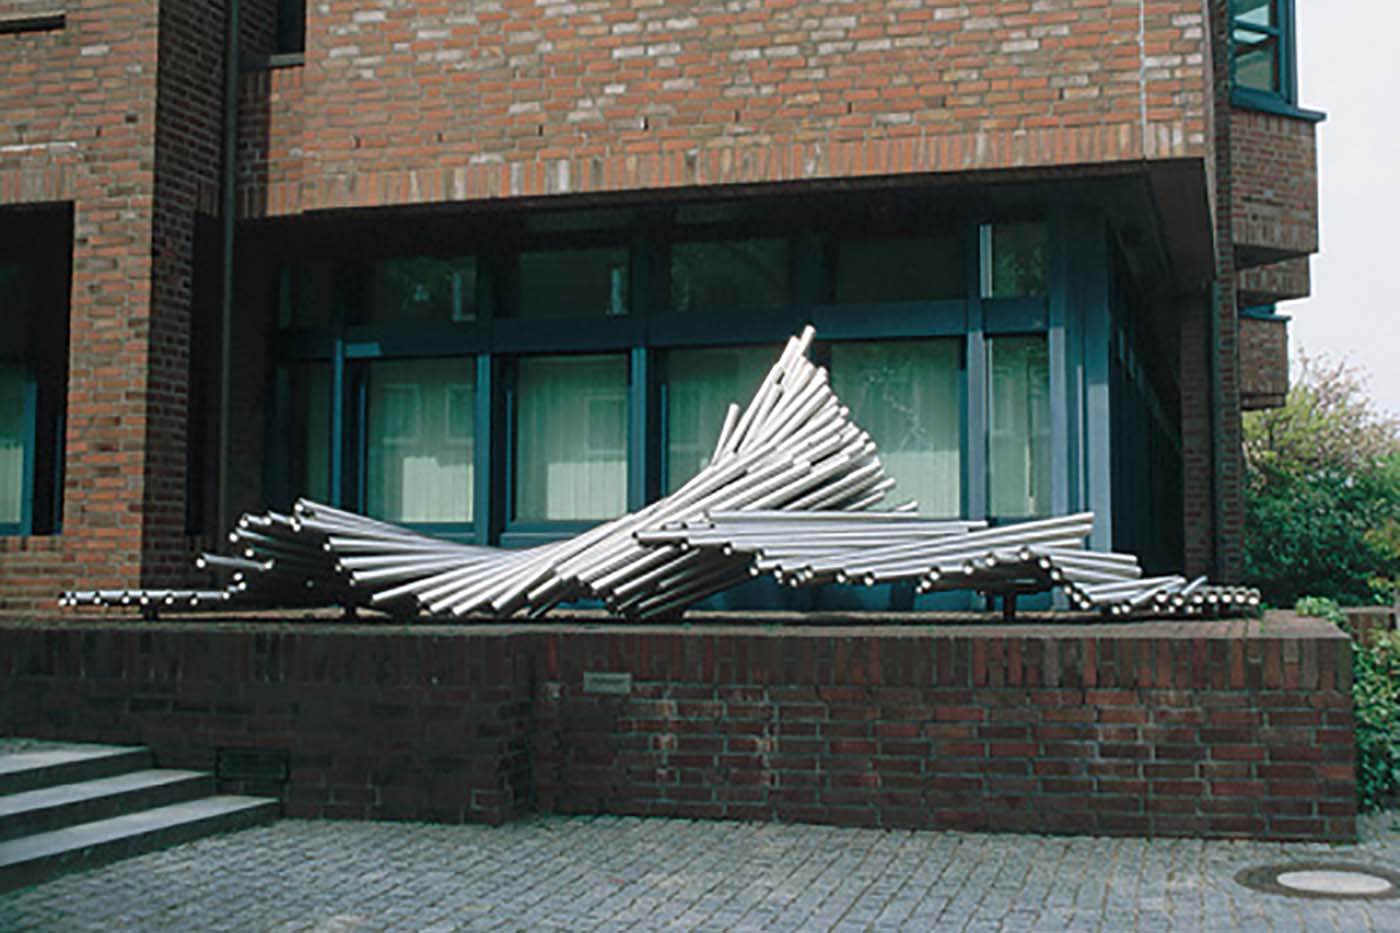 28_Nordseewelle, Landeszentralbank Schleswig-Holstein [1991]